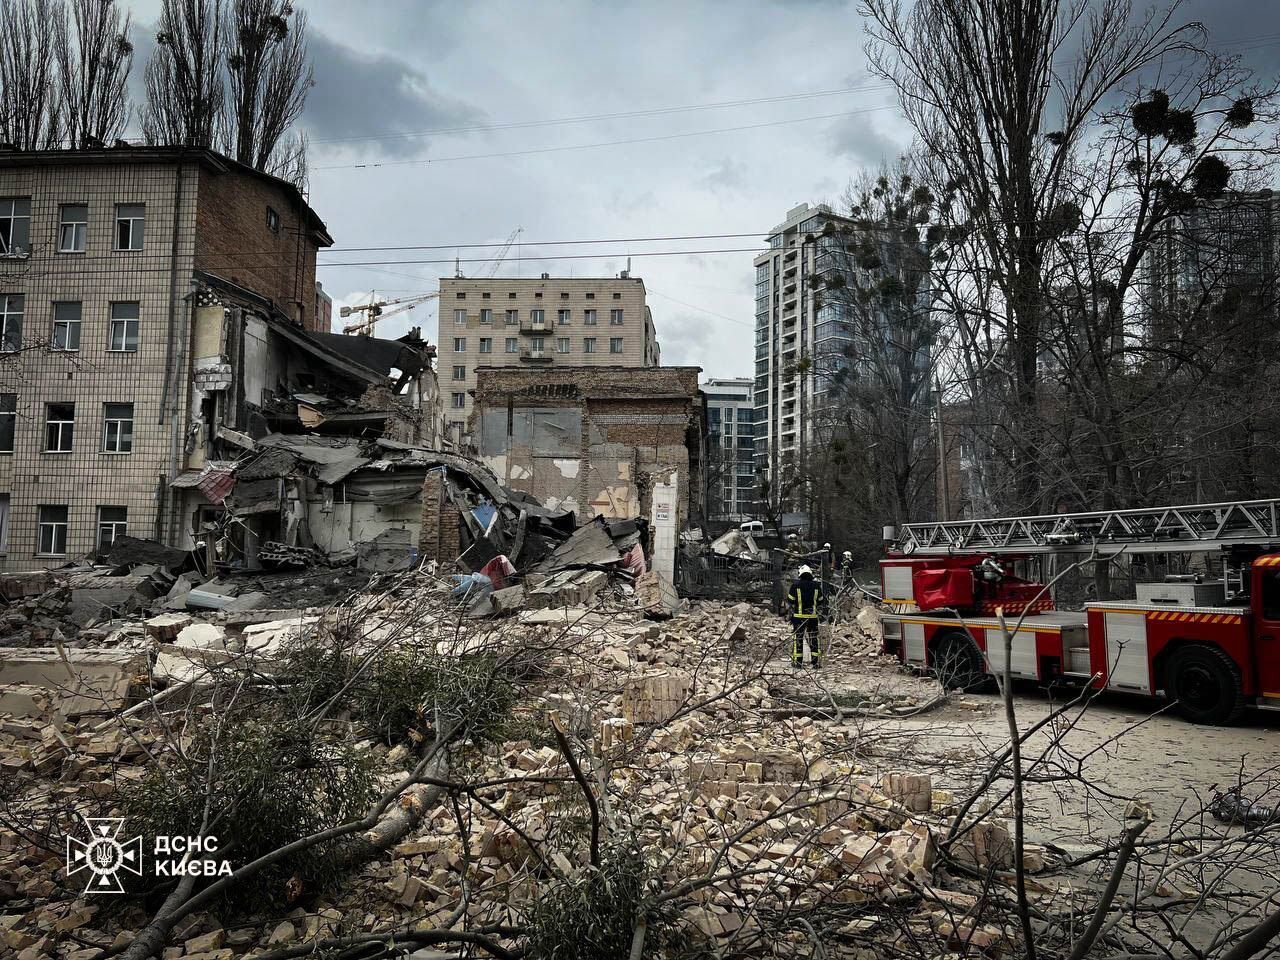 Zniszczona szkolna sala gimnastyczna i droga pokryta cegłami: skutki ataku rakietowego w Peczersku w Kijowie. Zdjęcie